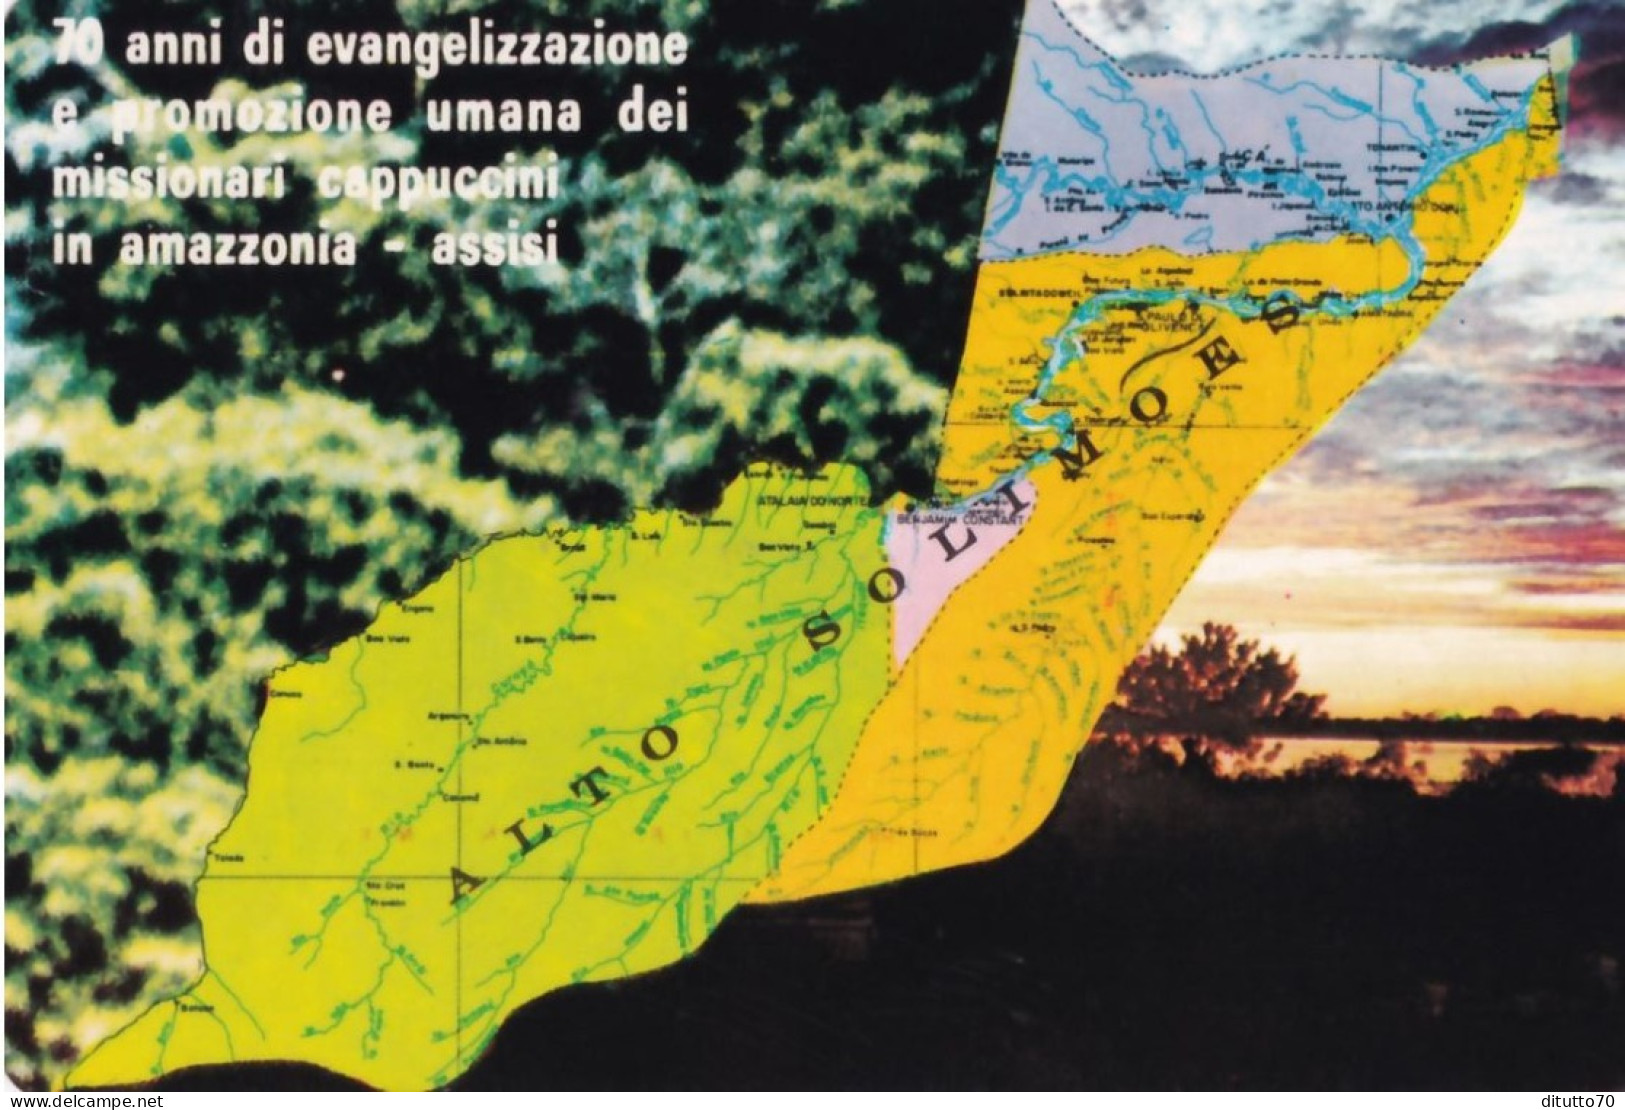 Calendarietto - Missione Cappuccini Amazzonia - Assisi - Anno 1980 - Formato Piccolo : 1971-80